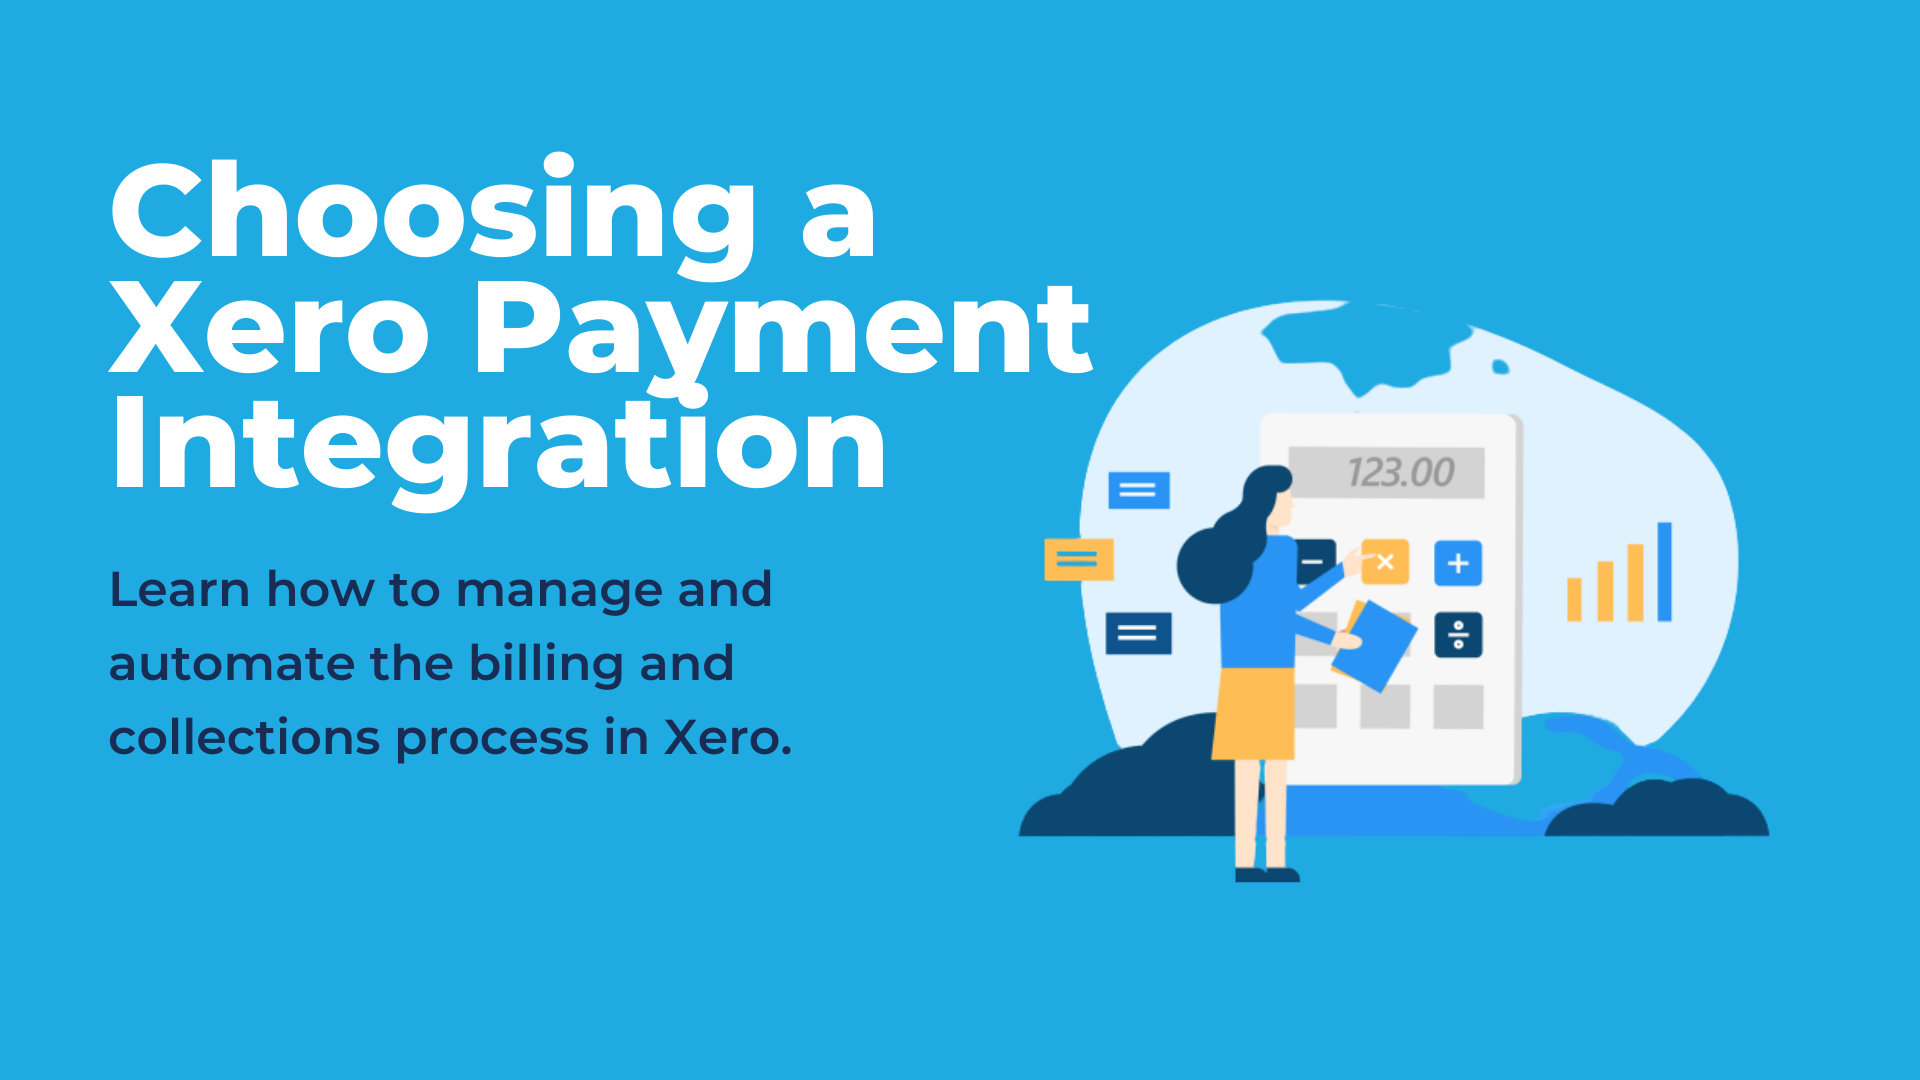 Choosing a Xero Payment Integration